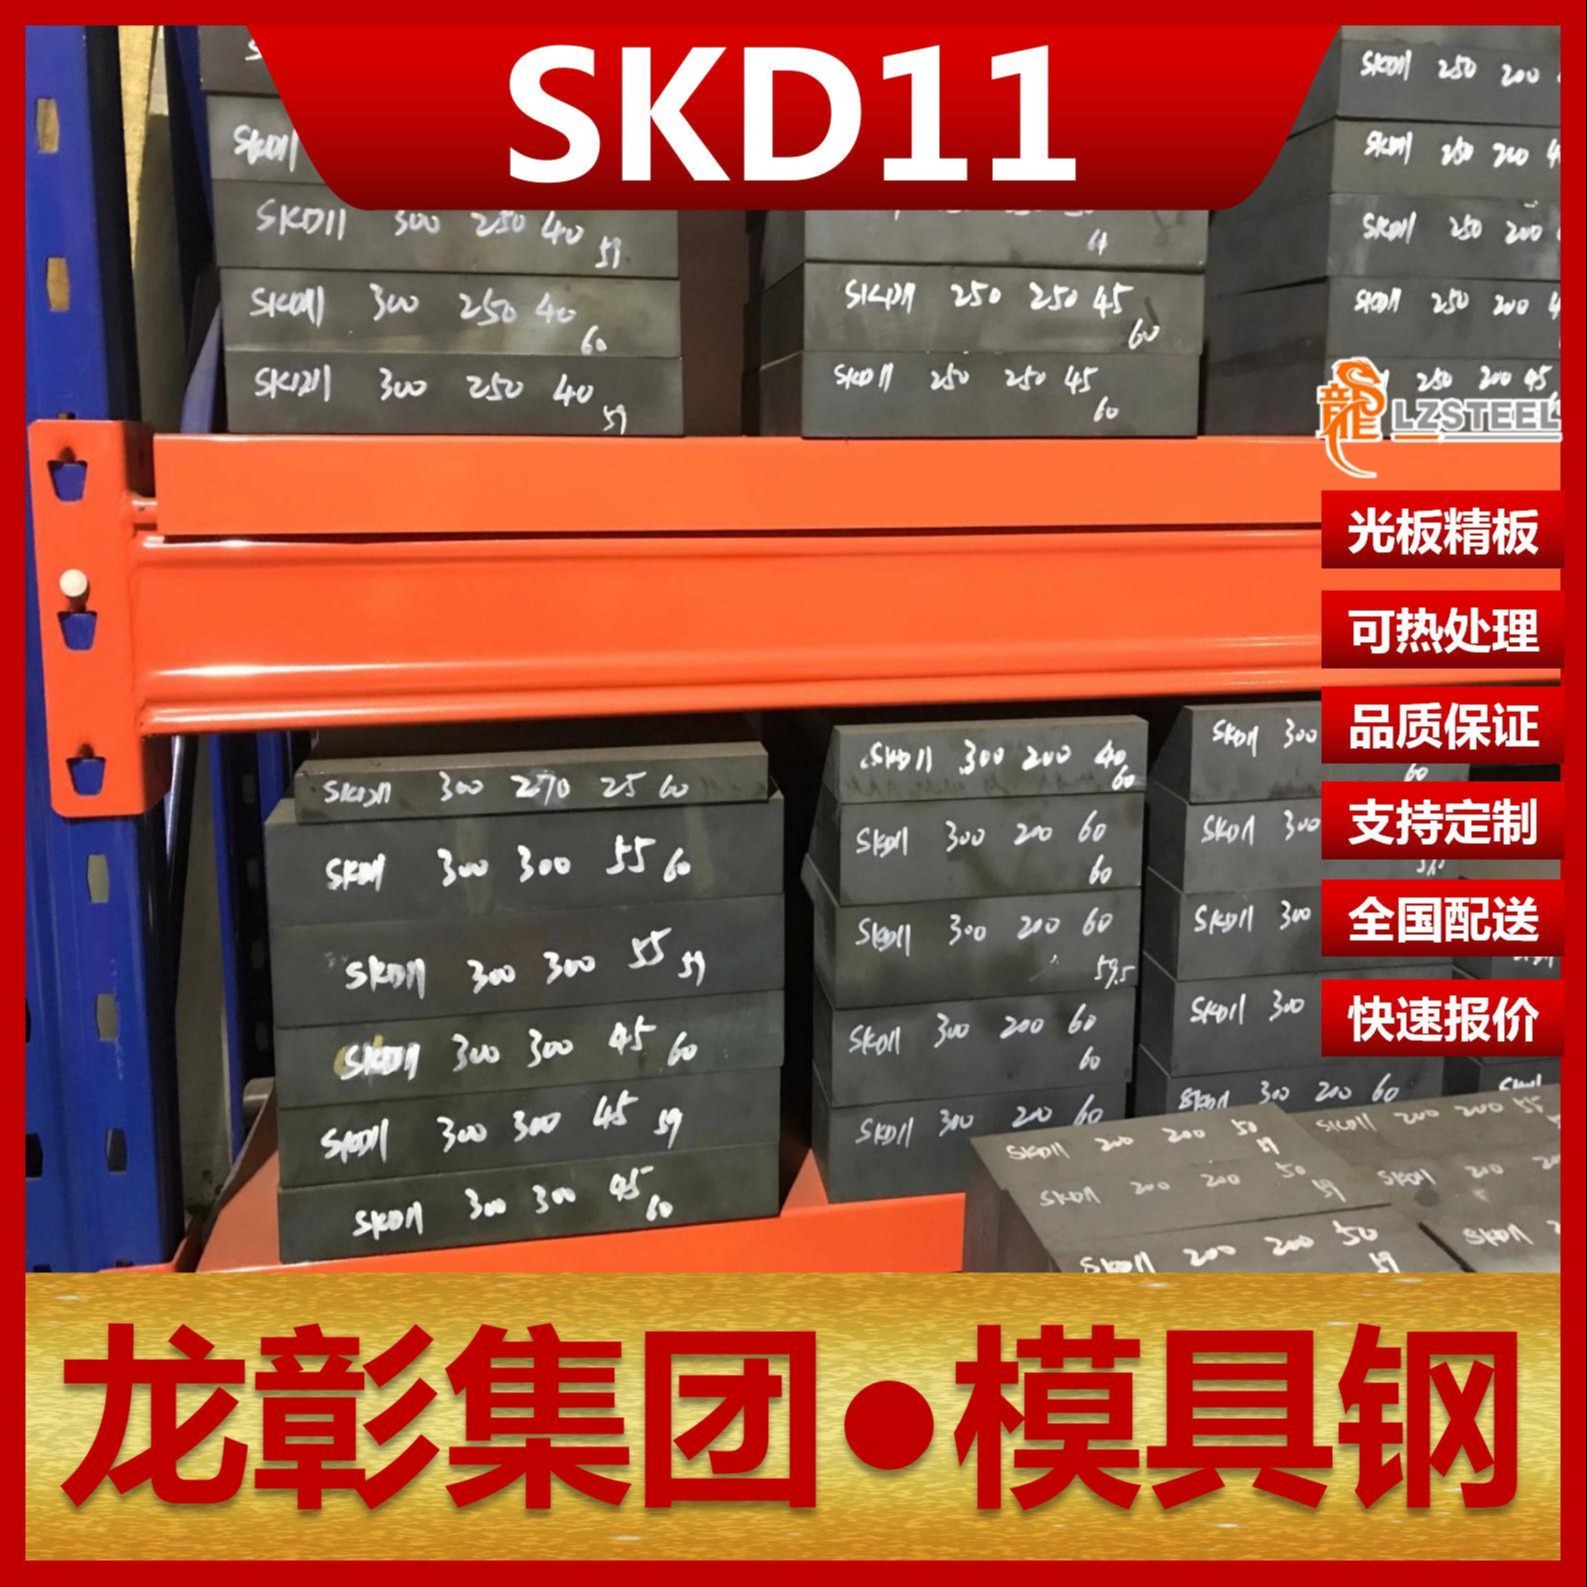 龙彰集团KD11S模具钢现货批零 主营KD11S扁钢圆棒冷作模具钢